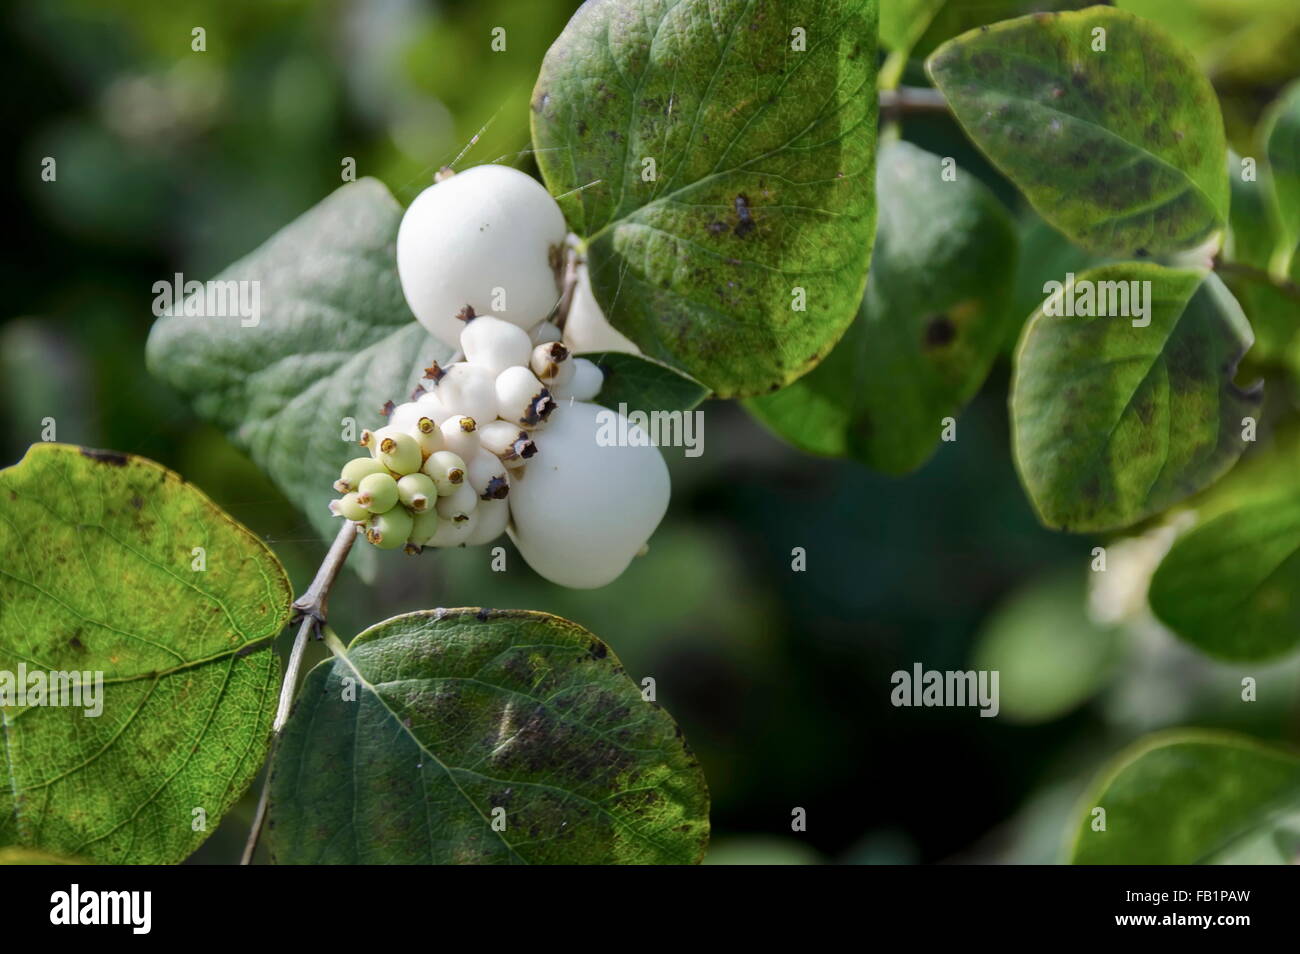 Snowberry albus shrub in park, Pancharevo, Bulgaria Stock Photo